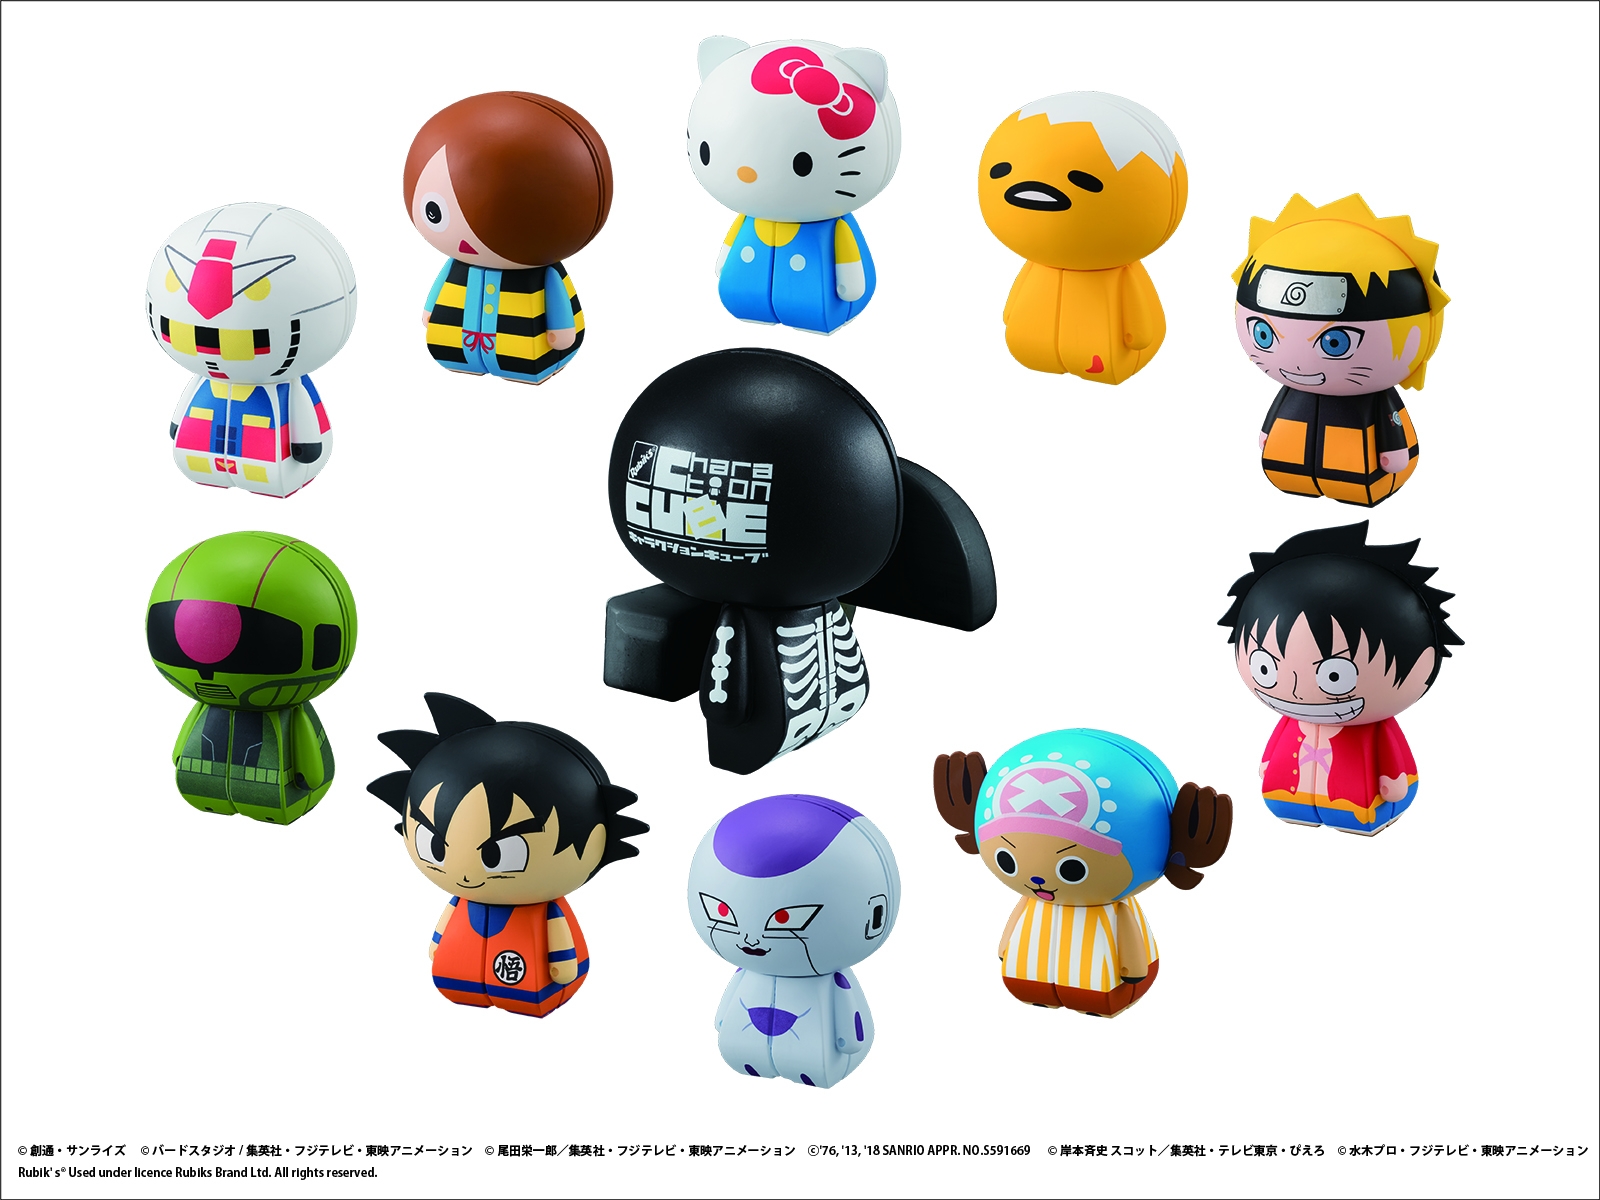 日本発 ルービックキューブ新シリーズ 国内外で人気のキャラクターデザインで世界展開 Charaction Cube キャラクション キューブ メガハウスのプレスリリース